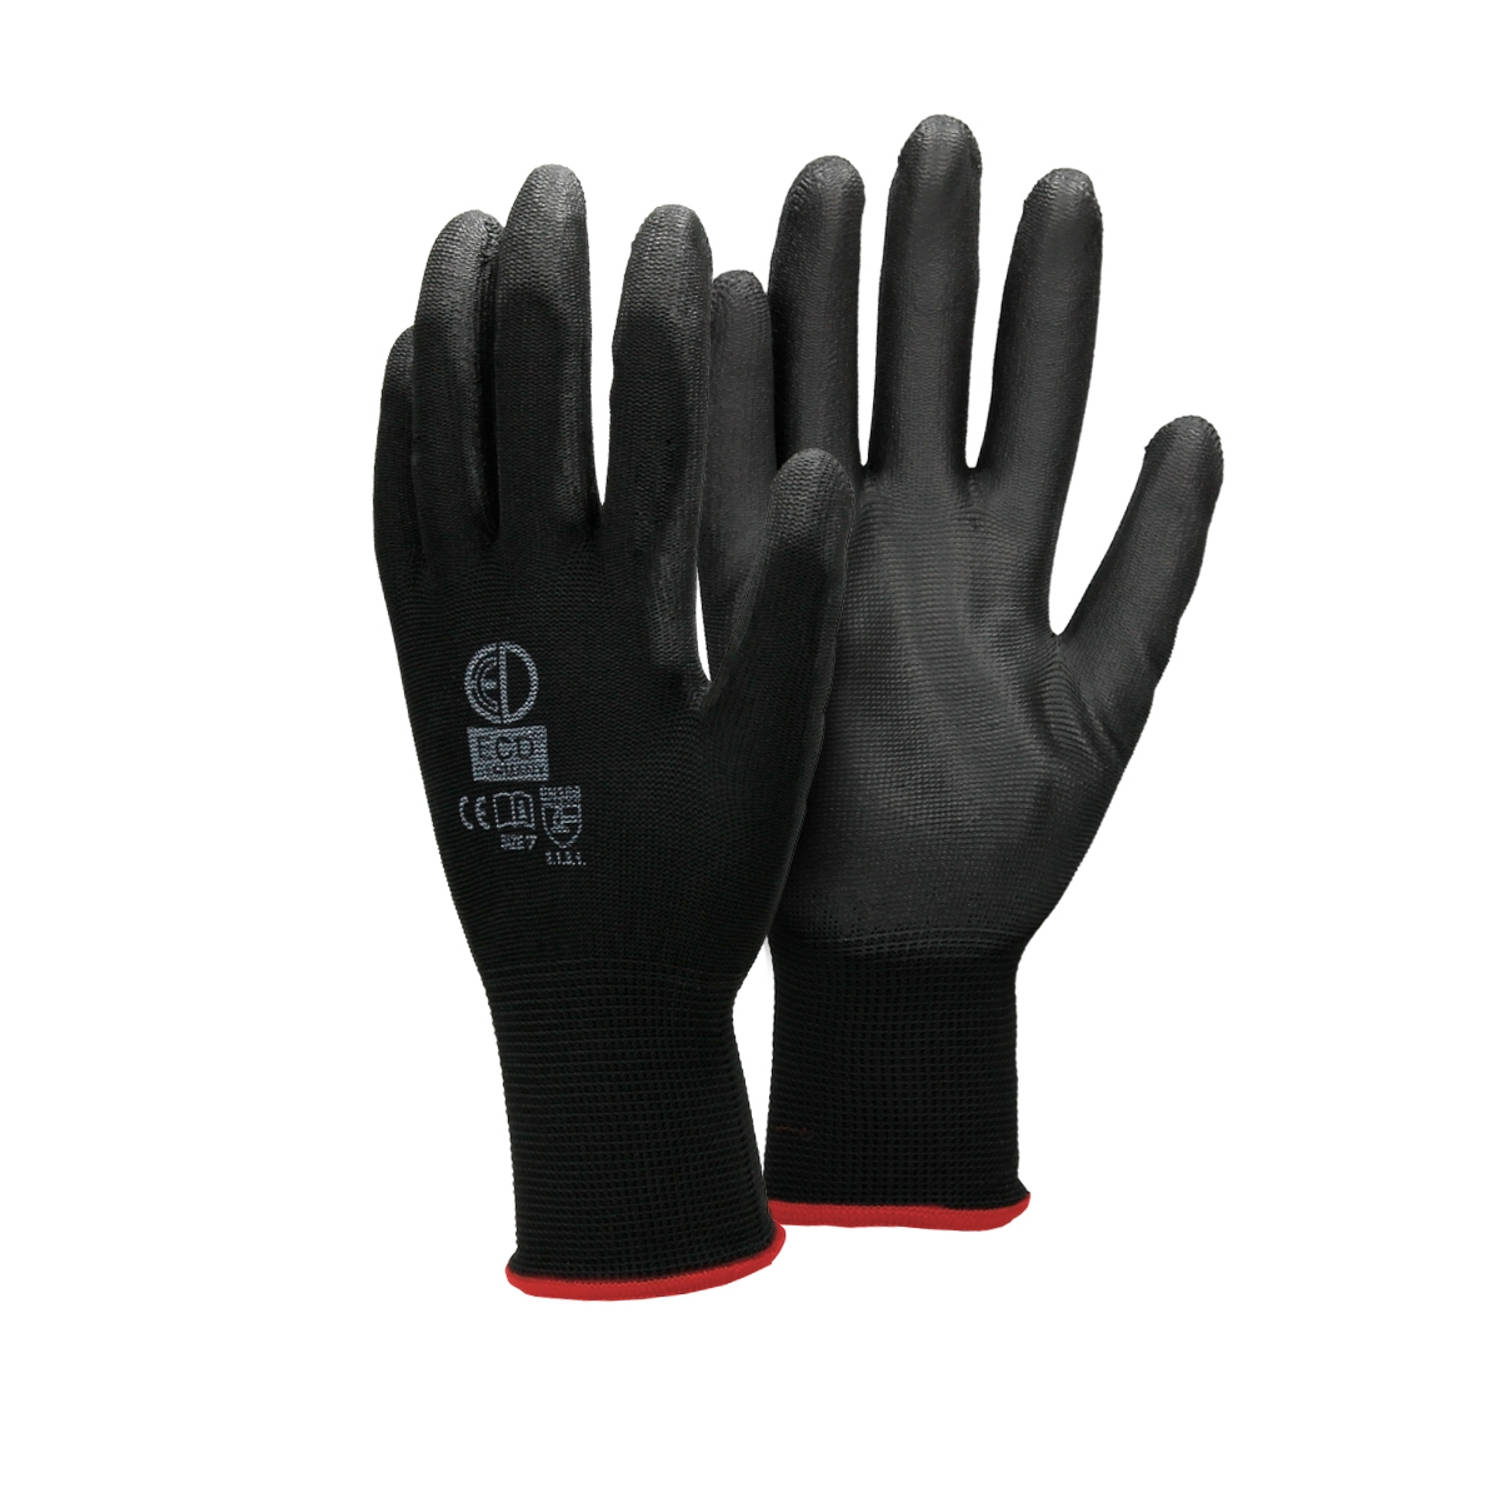 ECD Germany 480 paar werkhandschoenen met PU coating - maat 7-S - zwart - monteurshandschoenen montagehandschoenen beschermende handschoenen tuinhandschoenen - diverse kleuren & ma